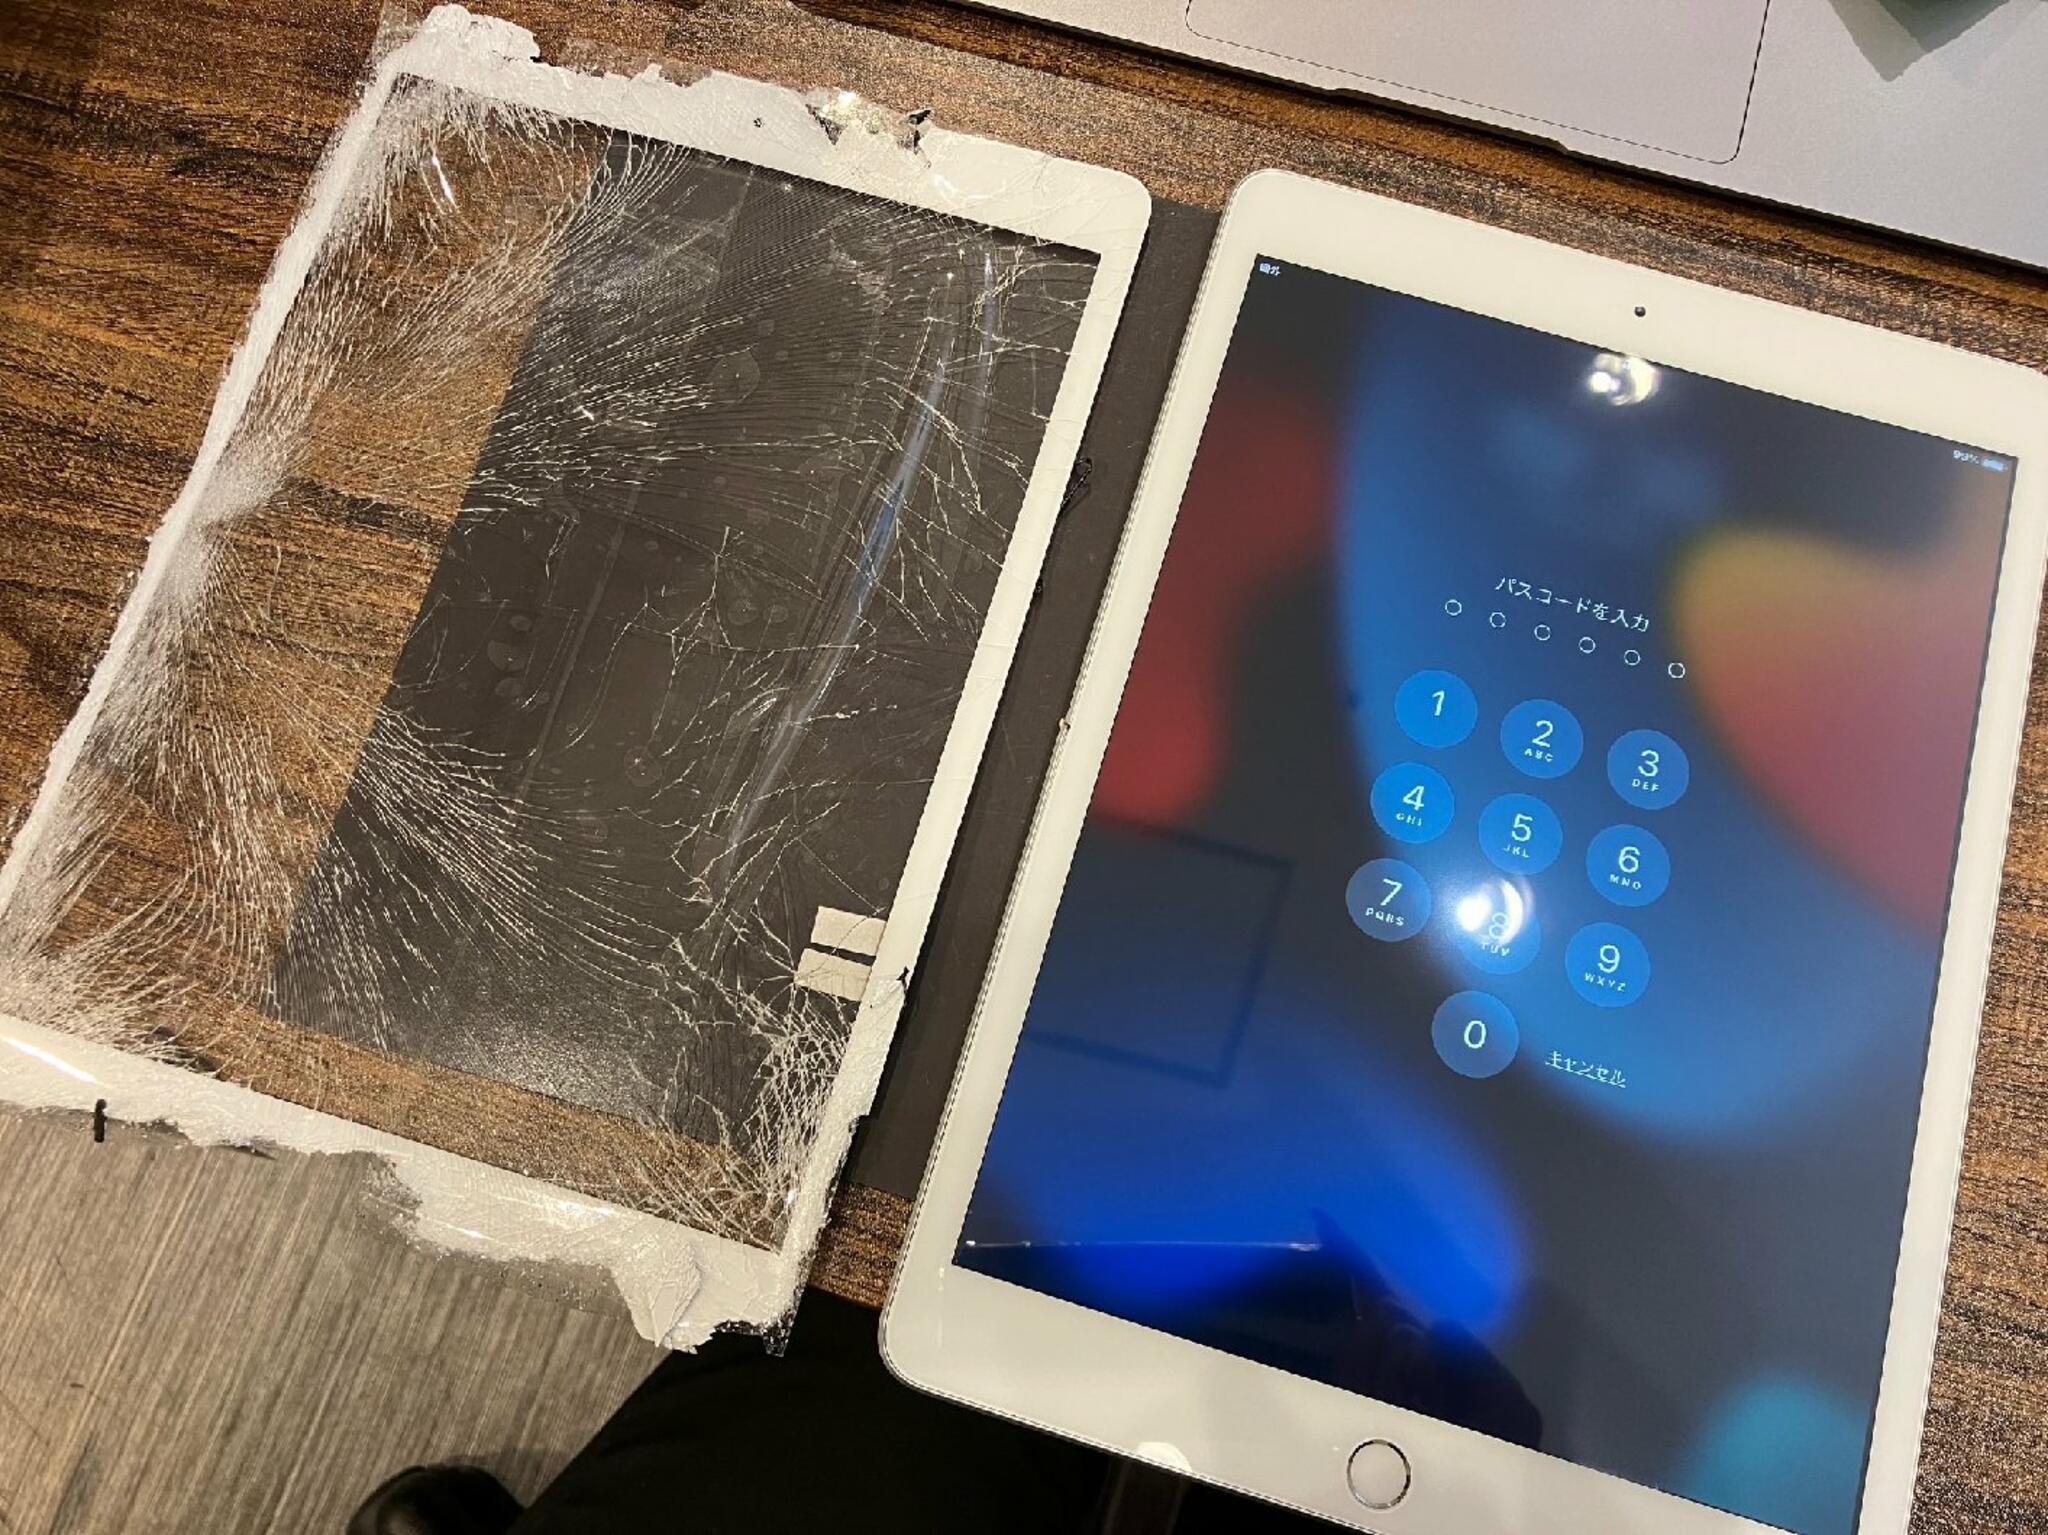 iPhone・iPad・Switch修理店 スマートクール イオンモール広島祇園店からのお知らせ(iPad のガラス割れはゴーストタッチに繋がるので注意しましょう！)に関する写真